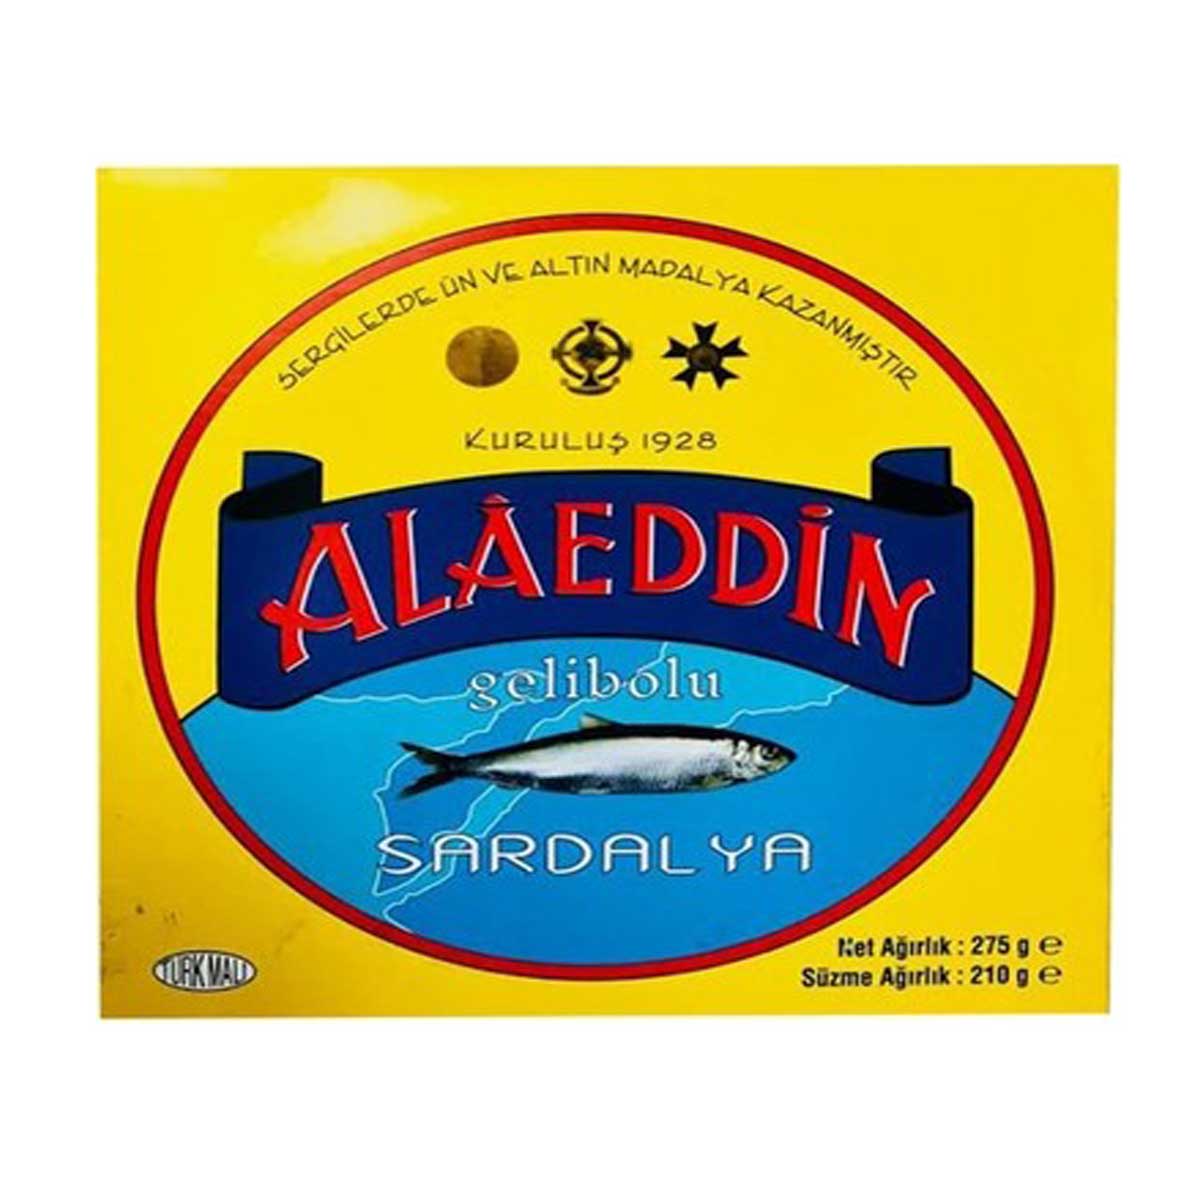 Alaeddin Yağlı Tuzlu Gelibolu Sardalyası Cam Kavanoz 1000gr,meşhur gelibolu yağlı tuzlu sardalya balığı cam kavanozlara basılmış olup 1000gr olarak satılmaktadır.